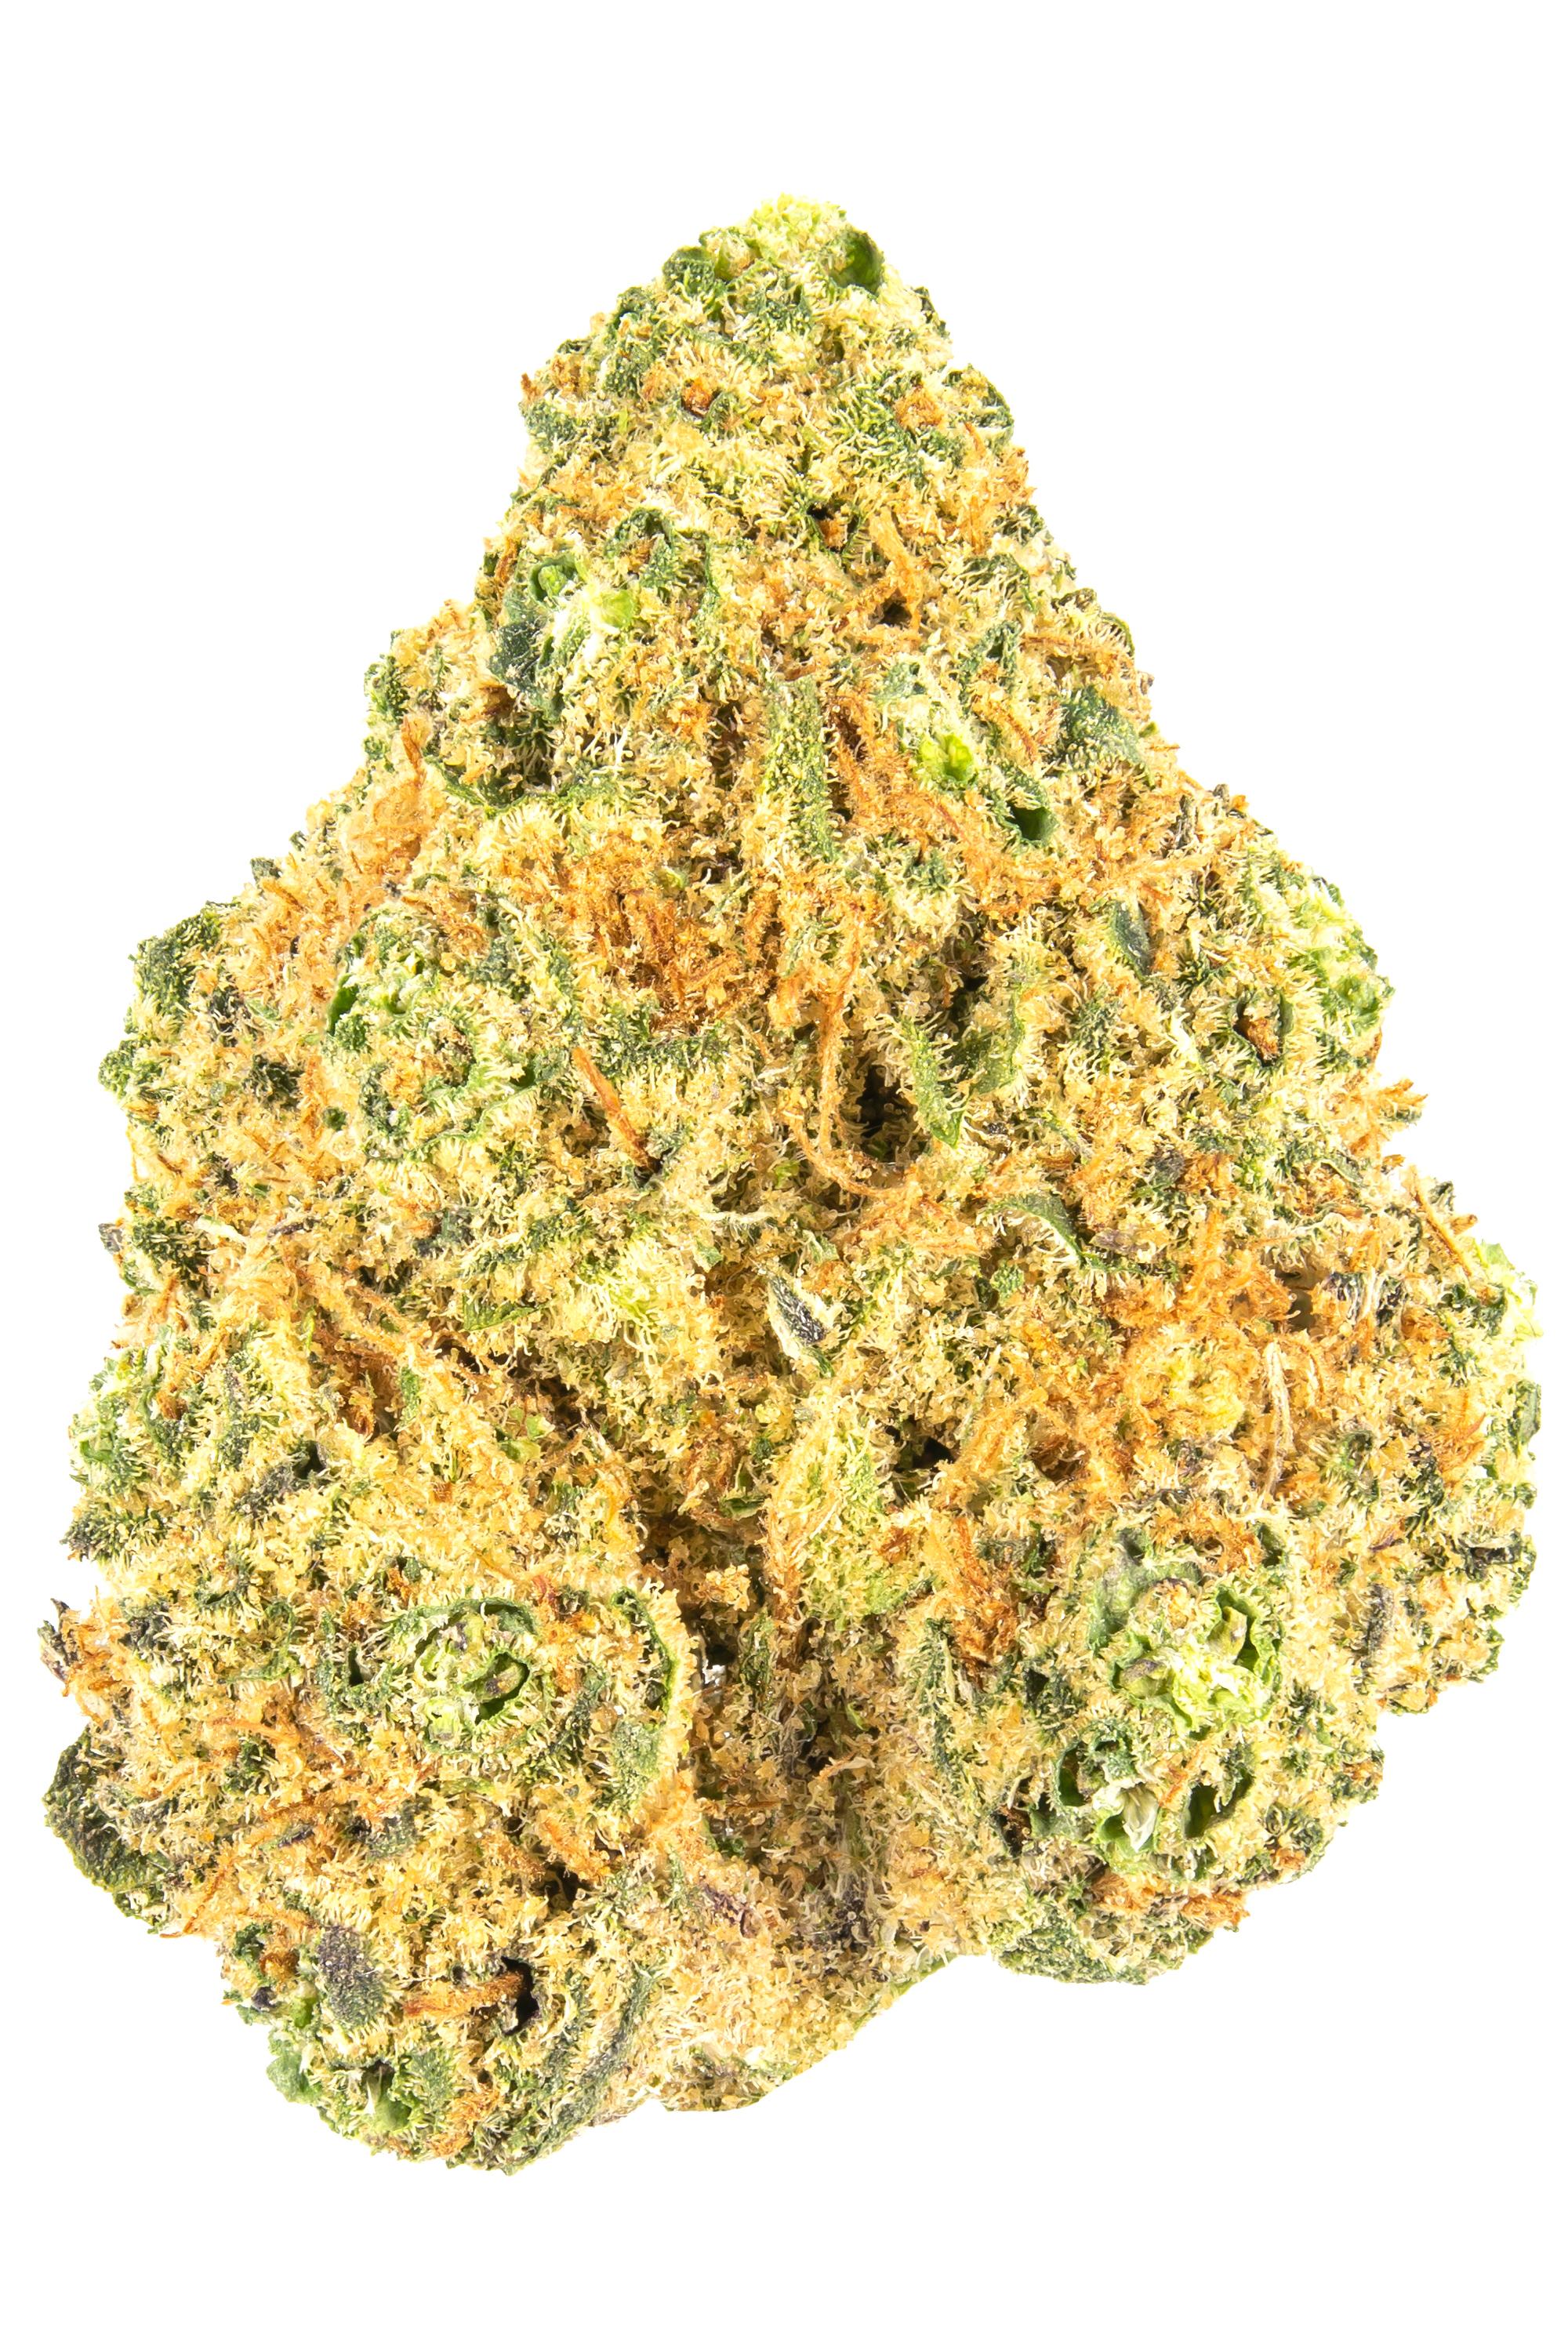 Orange Krush - Hybrid Cannabis Strain